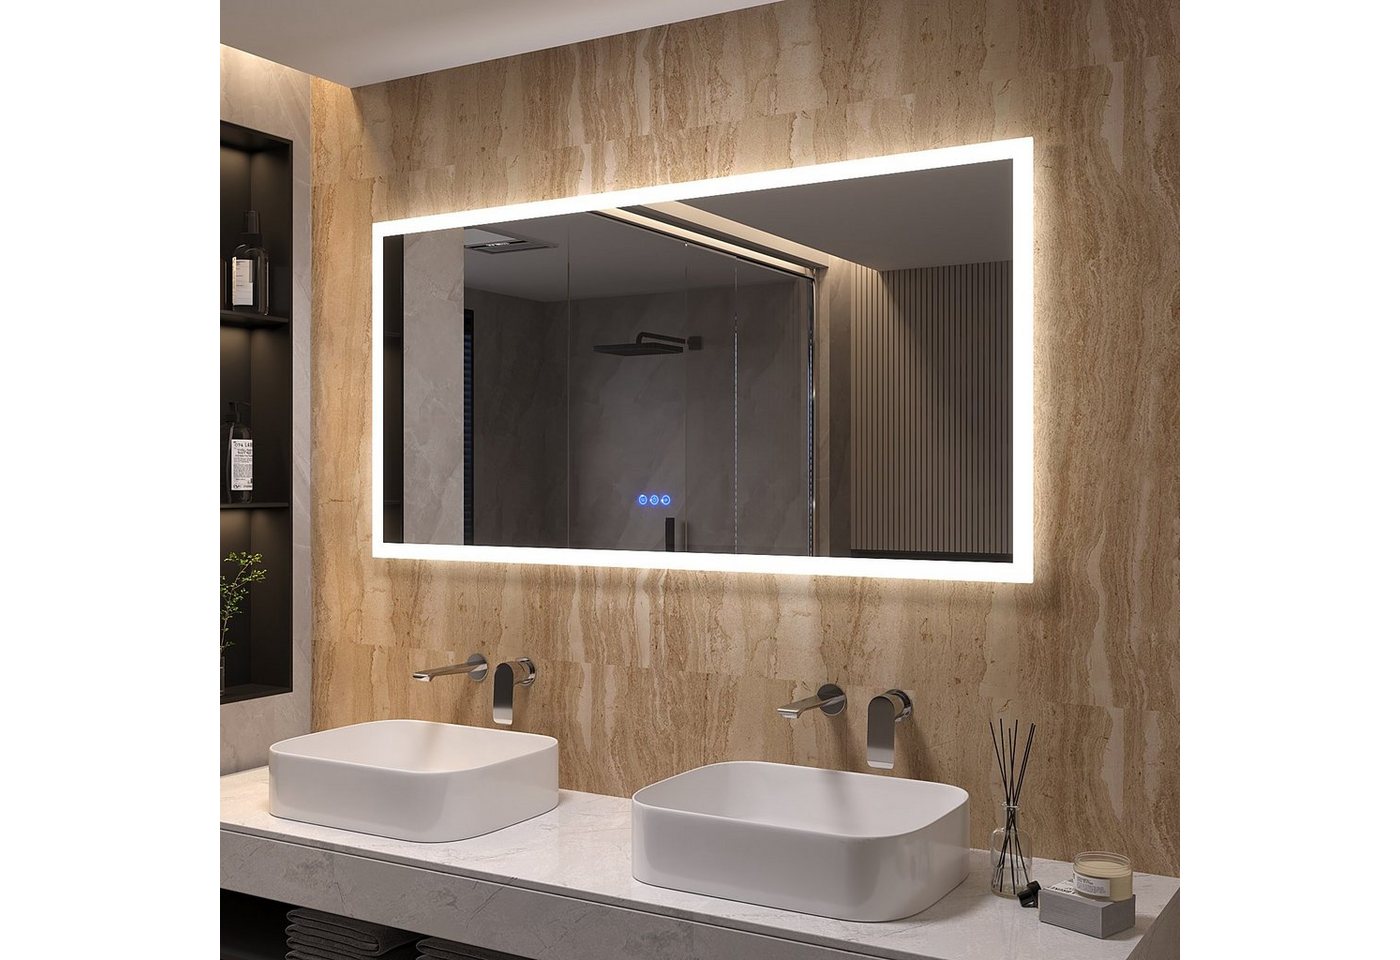 AQUALAVOS Badspiegel LED Spiegel 140x70 cm Touch Badezimmerspiegel Beschlagfrei Wandspiegel, mit 6400K Kaltweiß/ 3000K Warmweiß Licht Beleuchtung, Energiesparender von AQUALAVOS